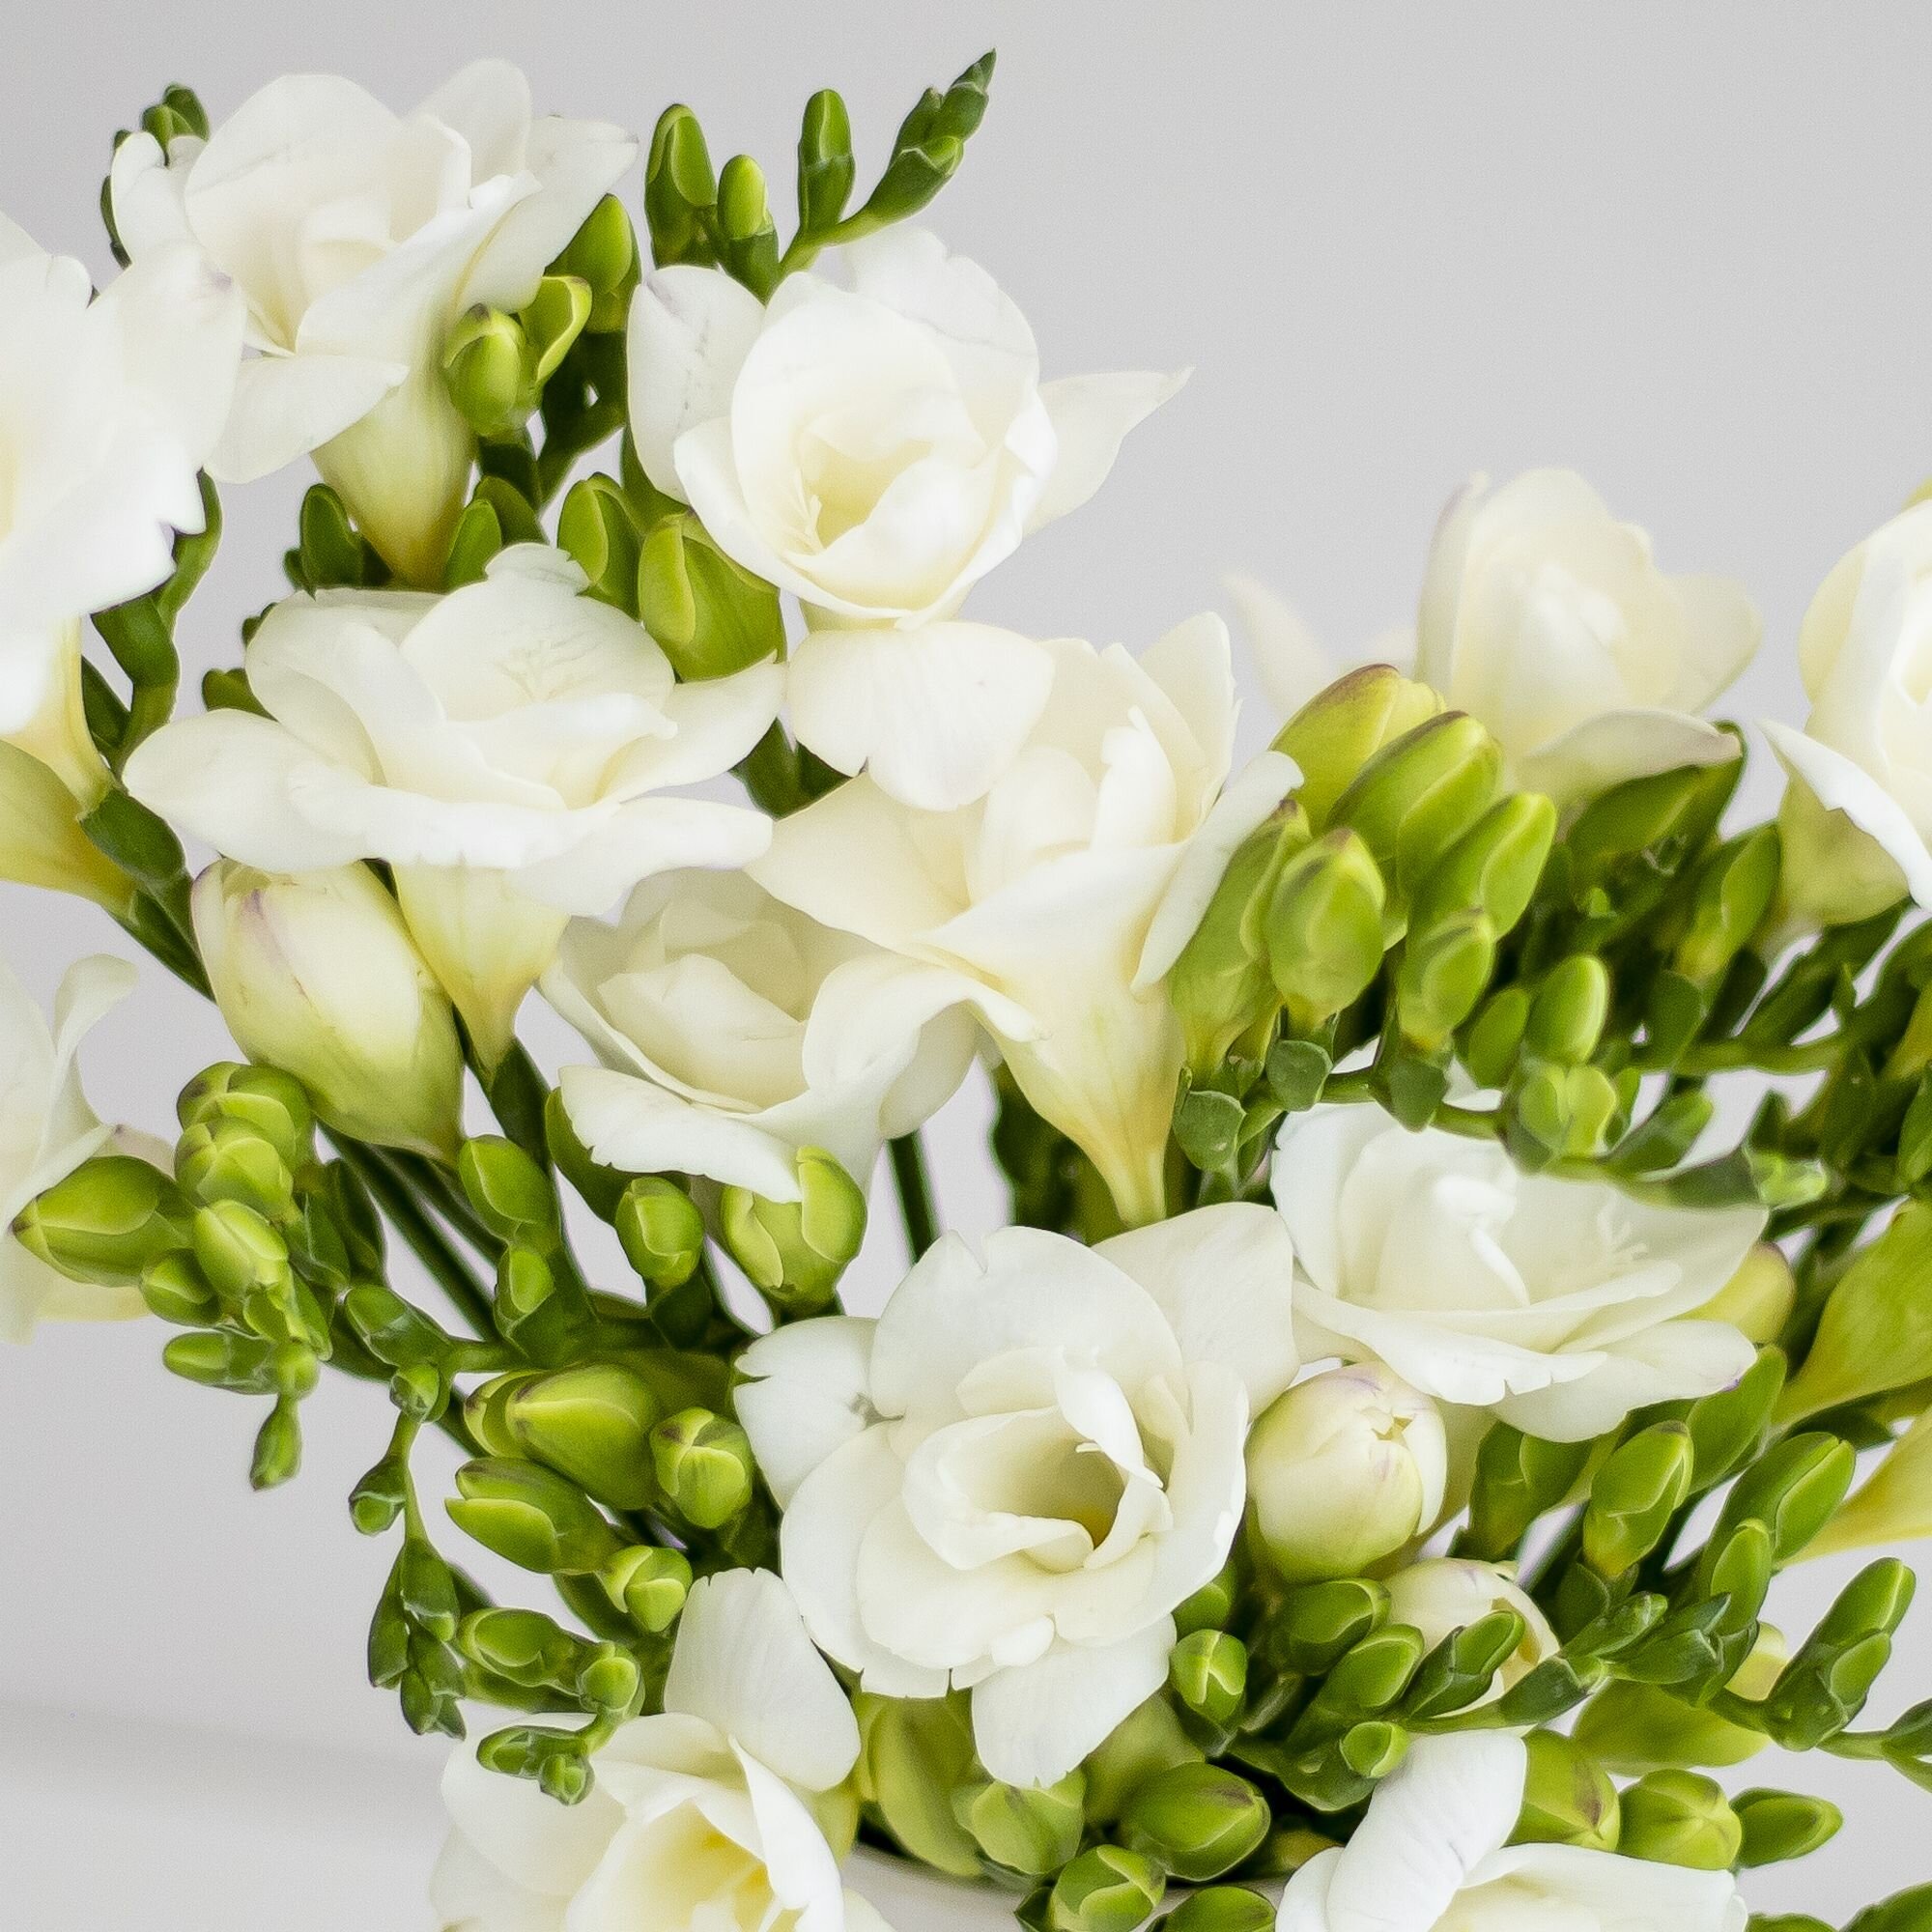 A closeup of white freesia flowers